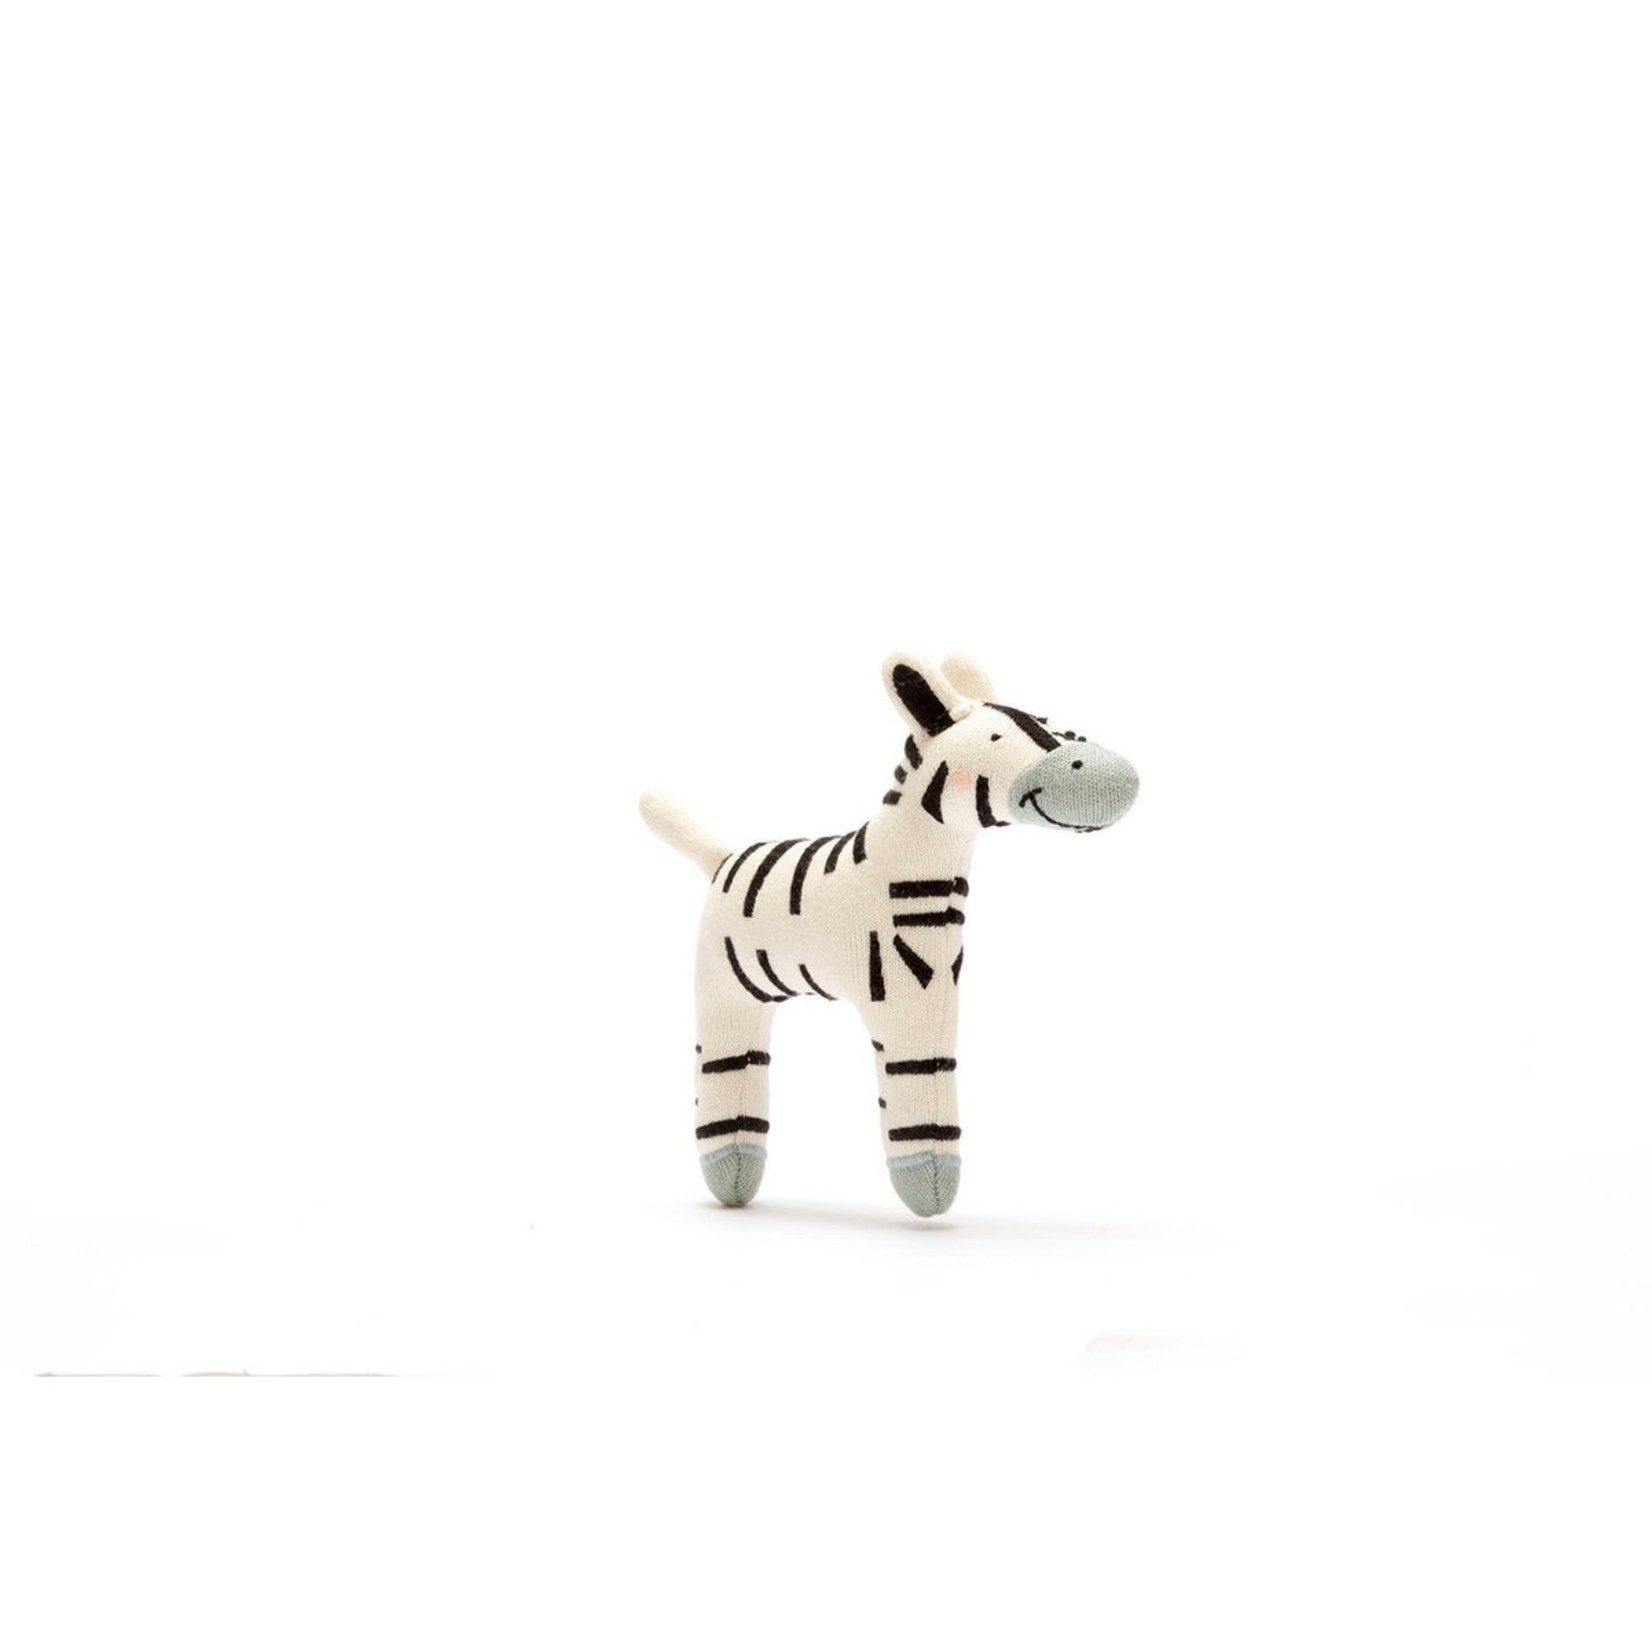 Best Years Ltd Small Organic Zebra Plush Baby Toy